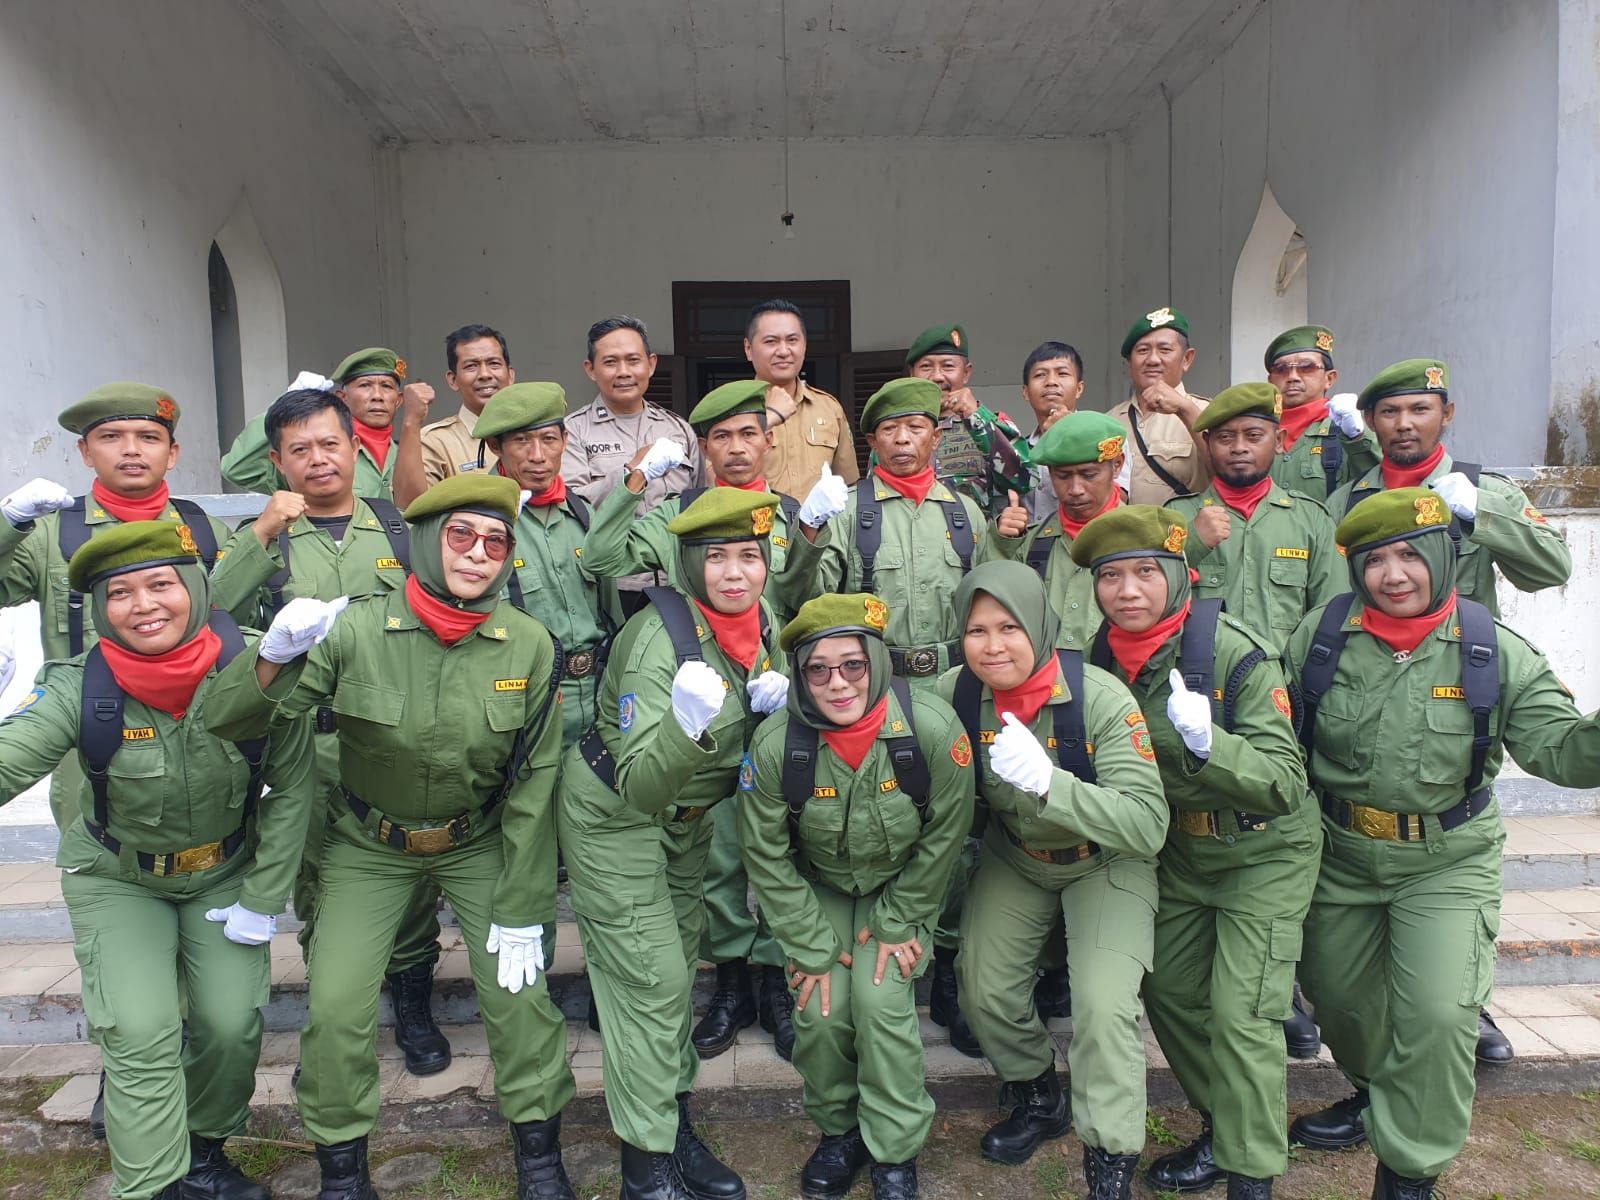 Personel Linmas Purwareja Klampok Foto Bersama Pelatih dan Official Usai Gladi Bersih 